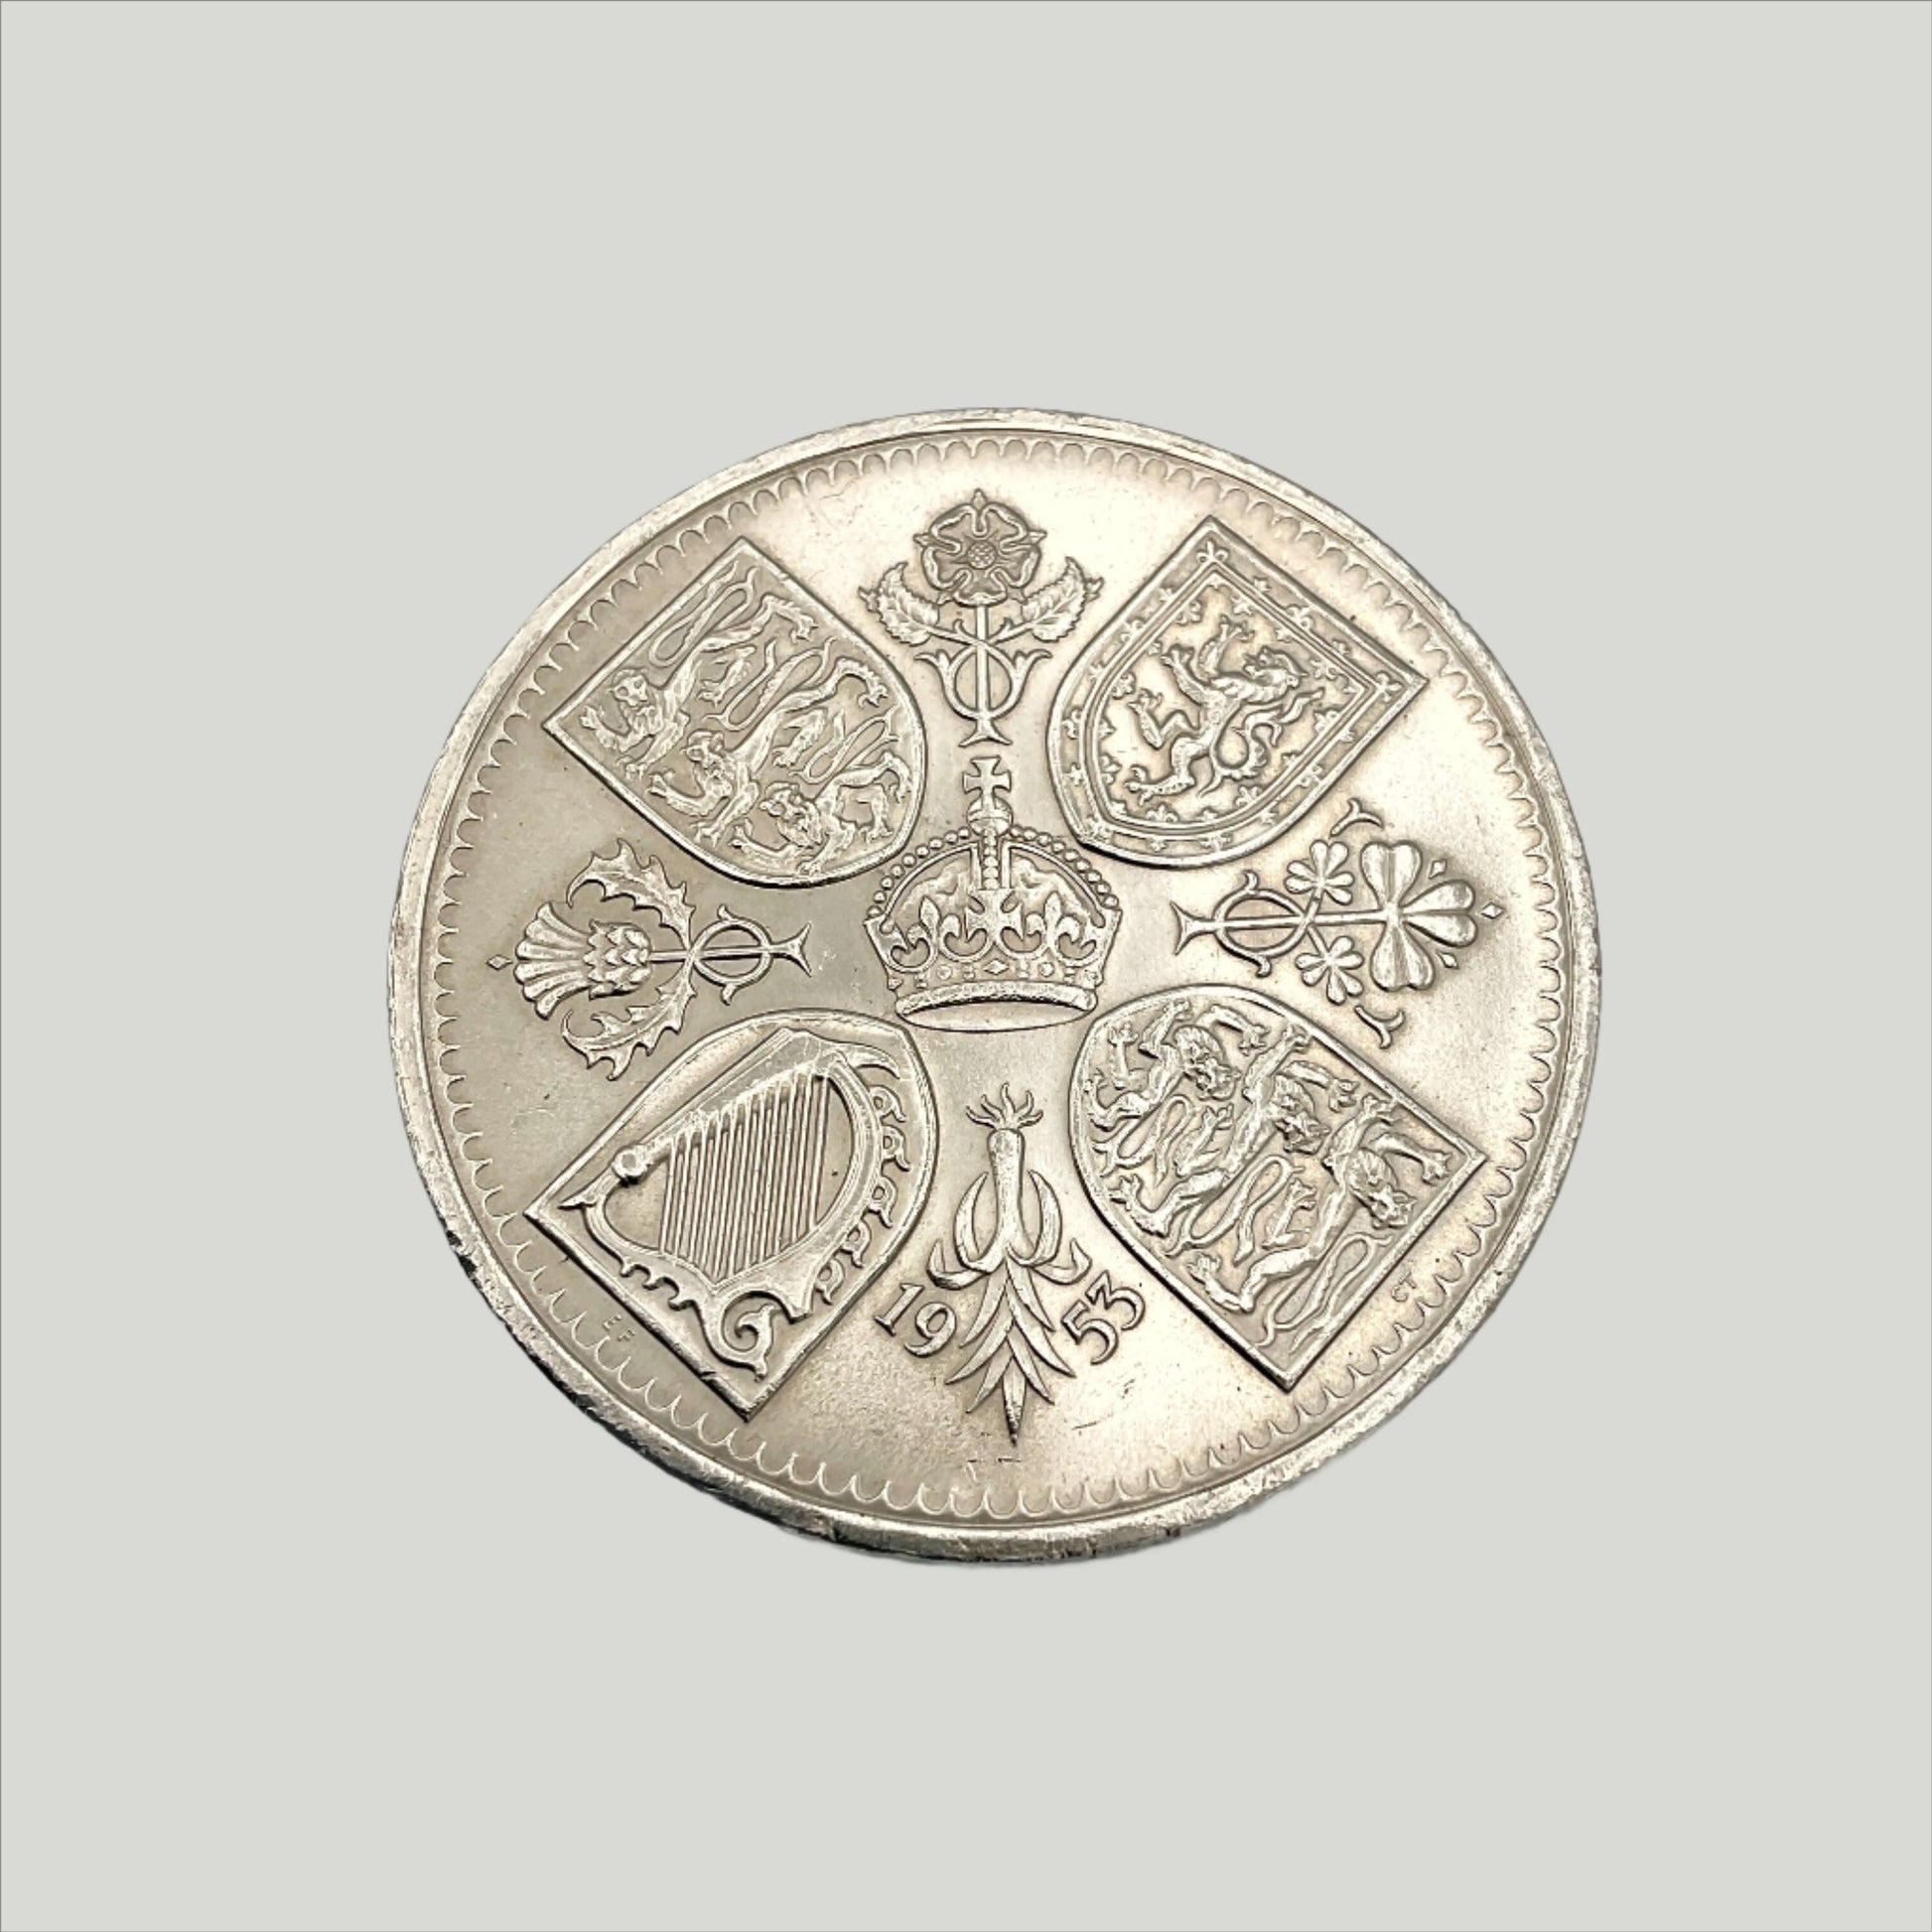 1953 Queen Elizabeth II coronation Coin